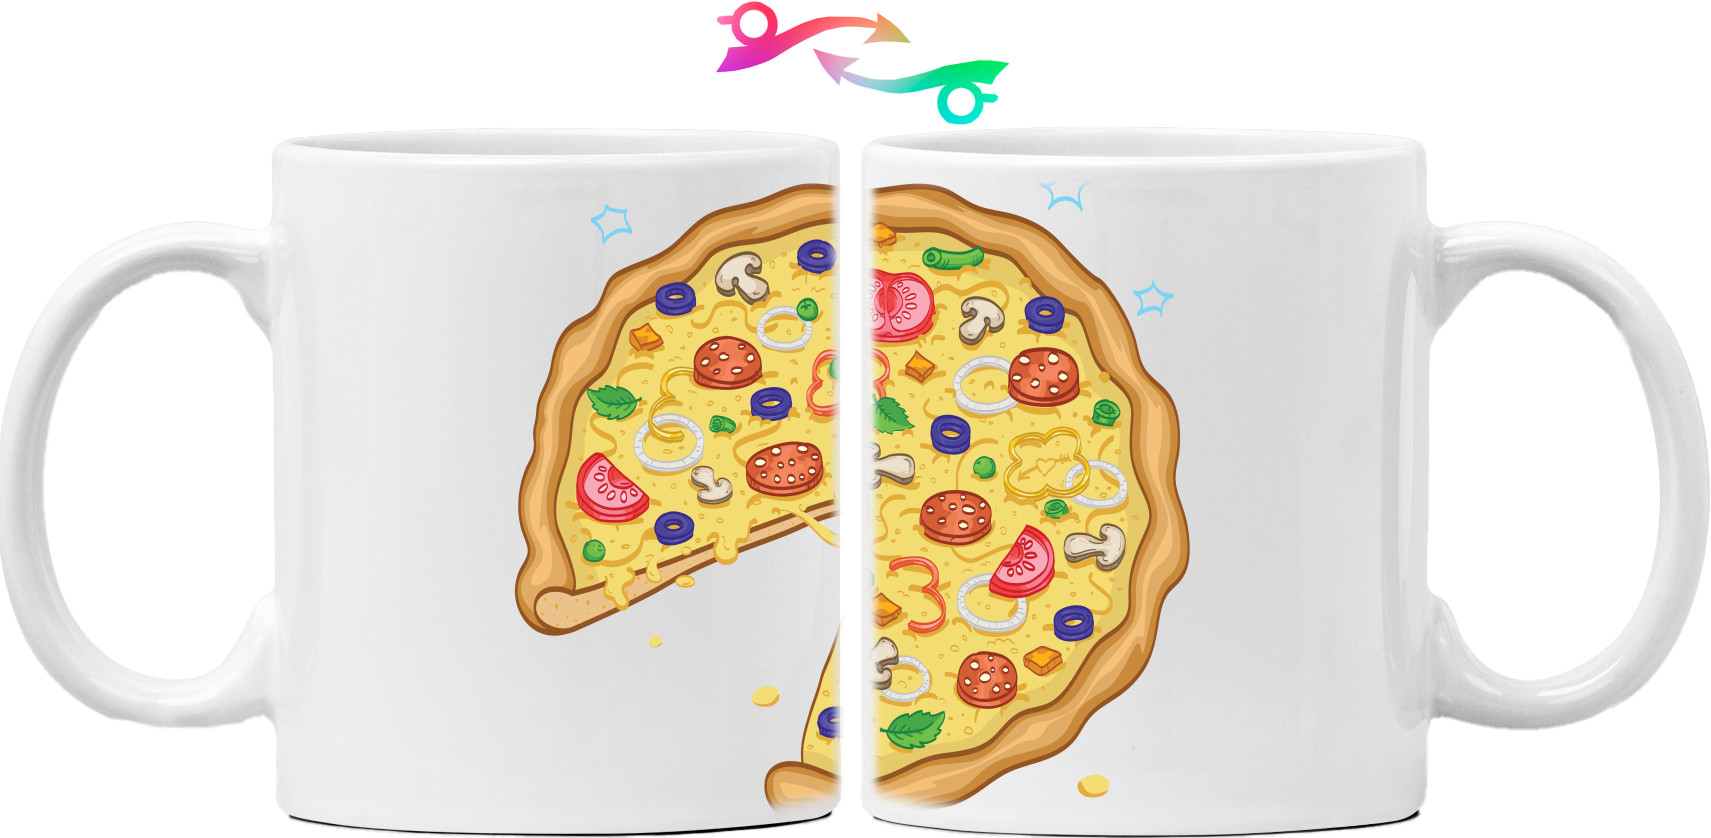 Family pizza 1